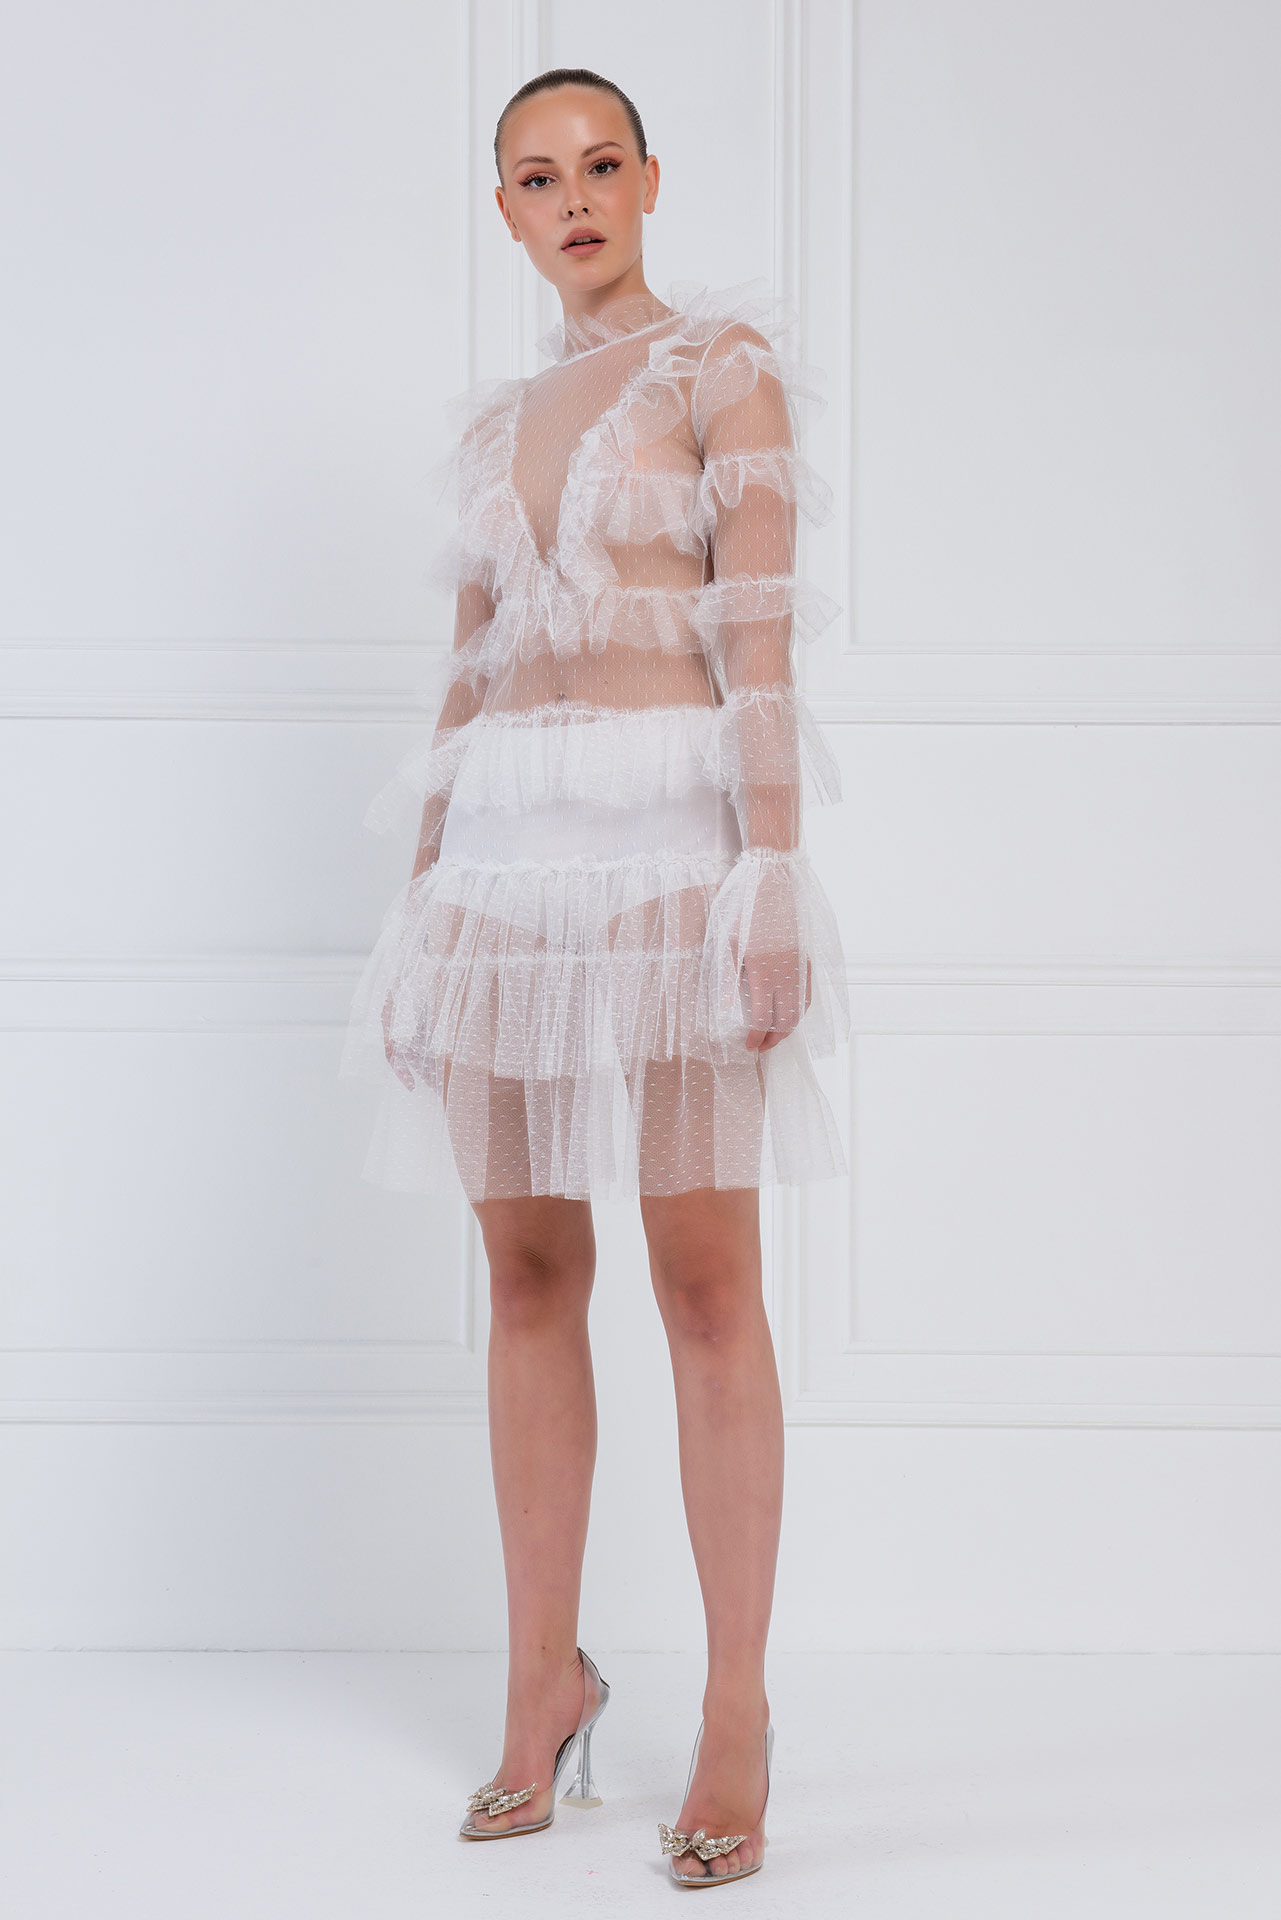 Прозрачное Платье с Рюшами Offwhite Фатиновое Мини-Платье